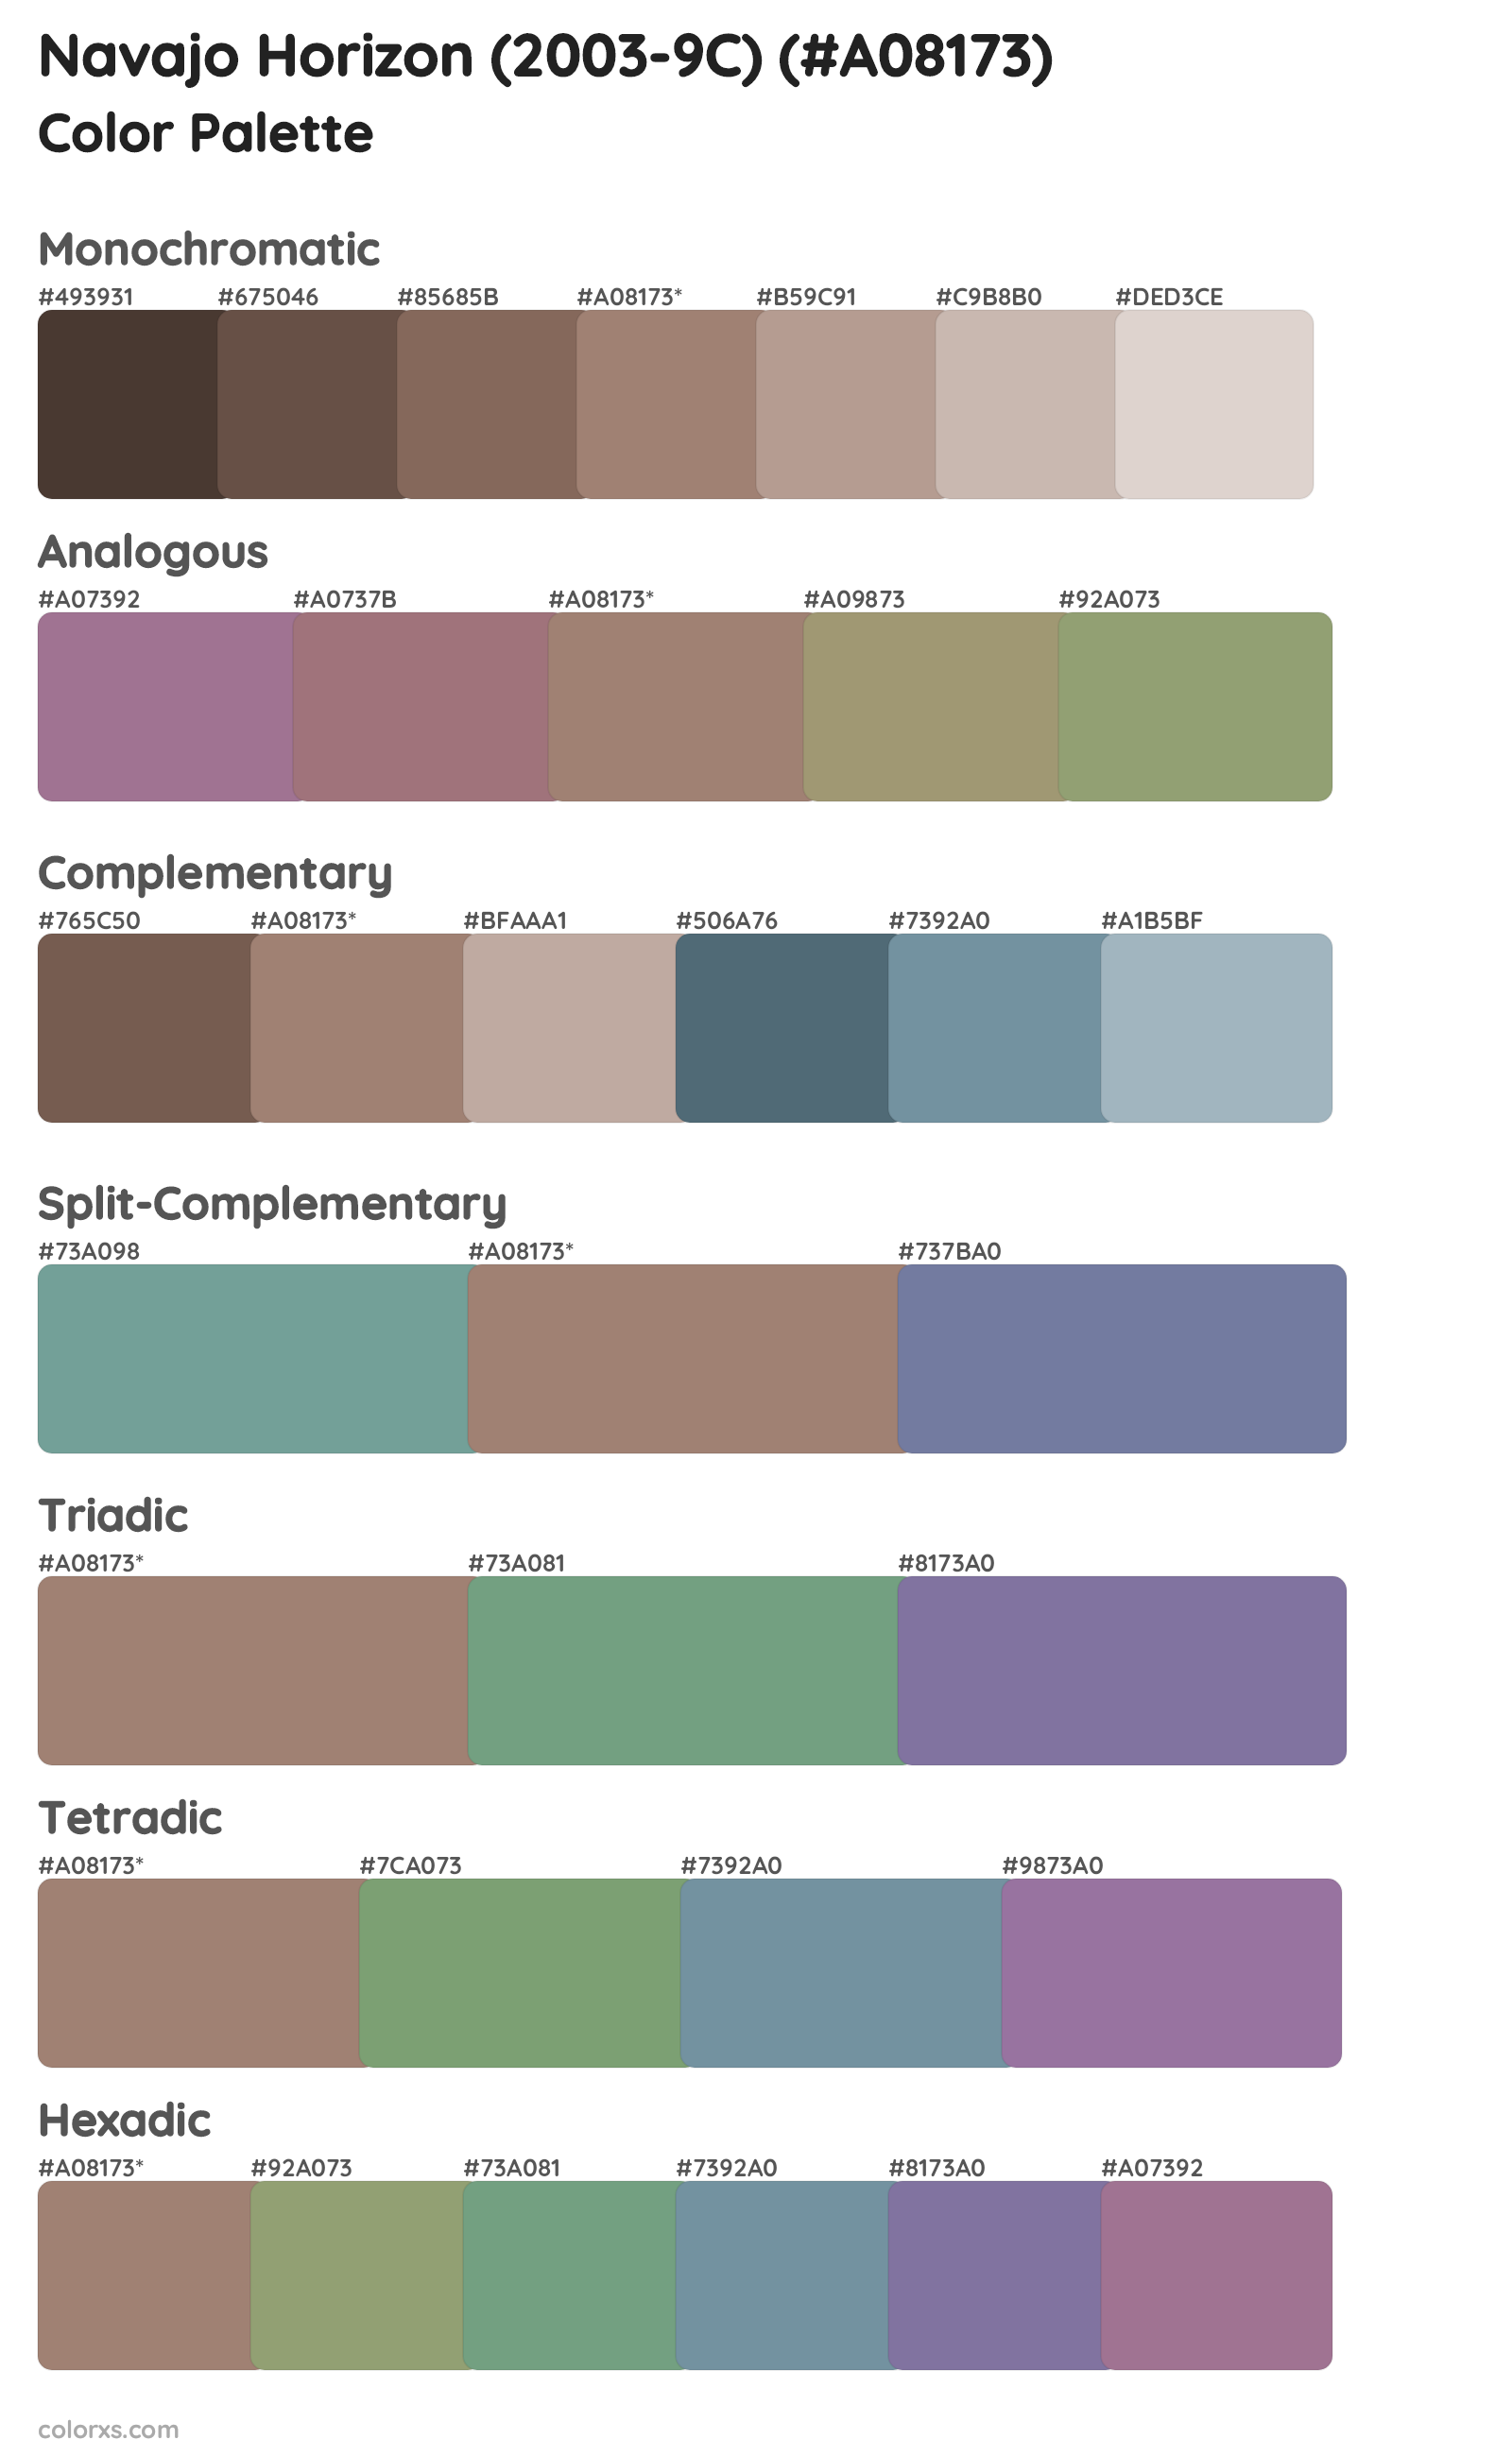 Navajo Horizon (2003-9C) Color Scheme Palettes